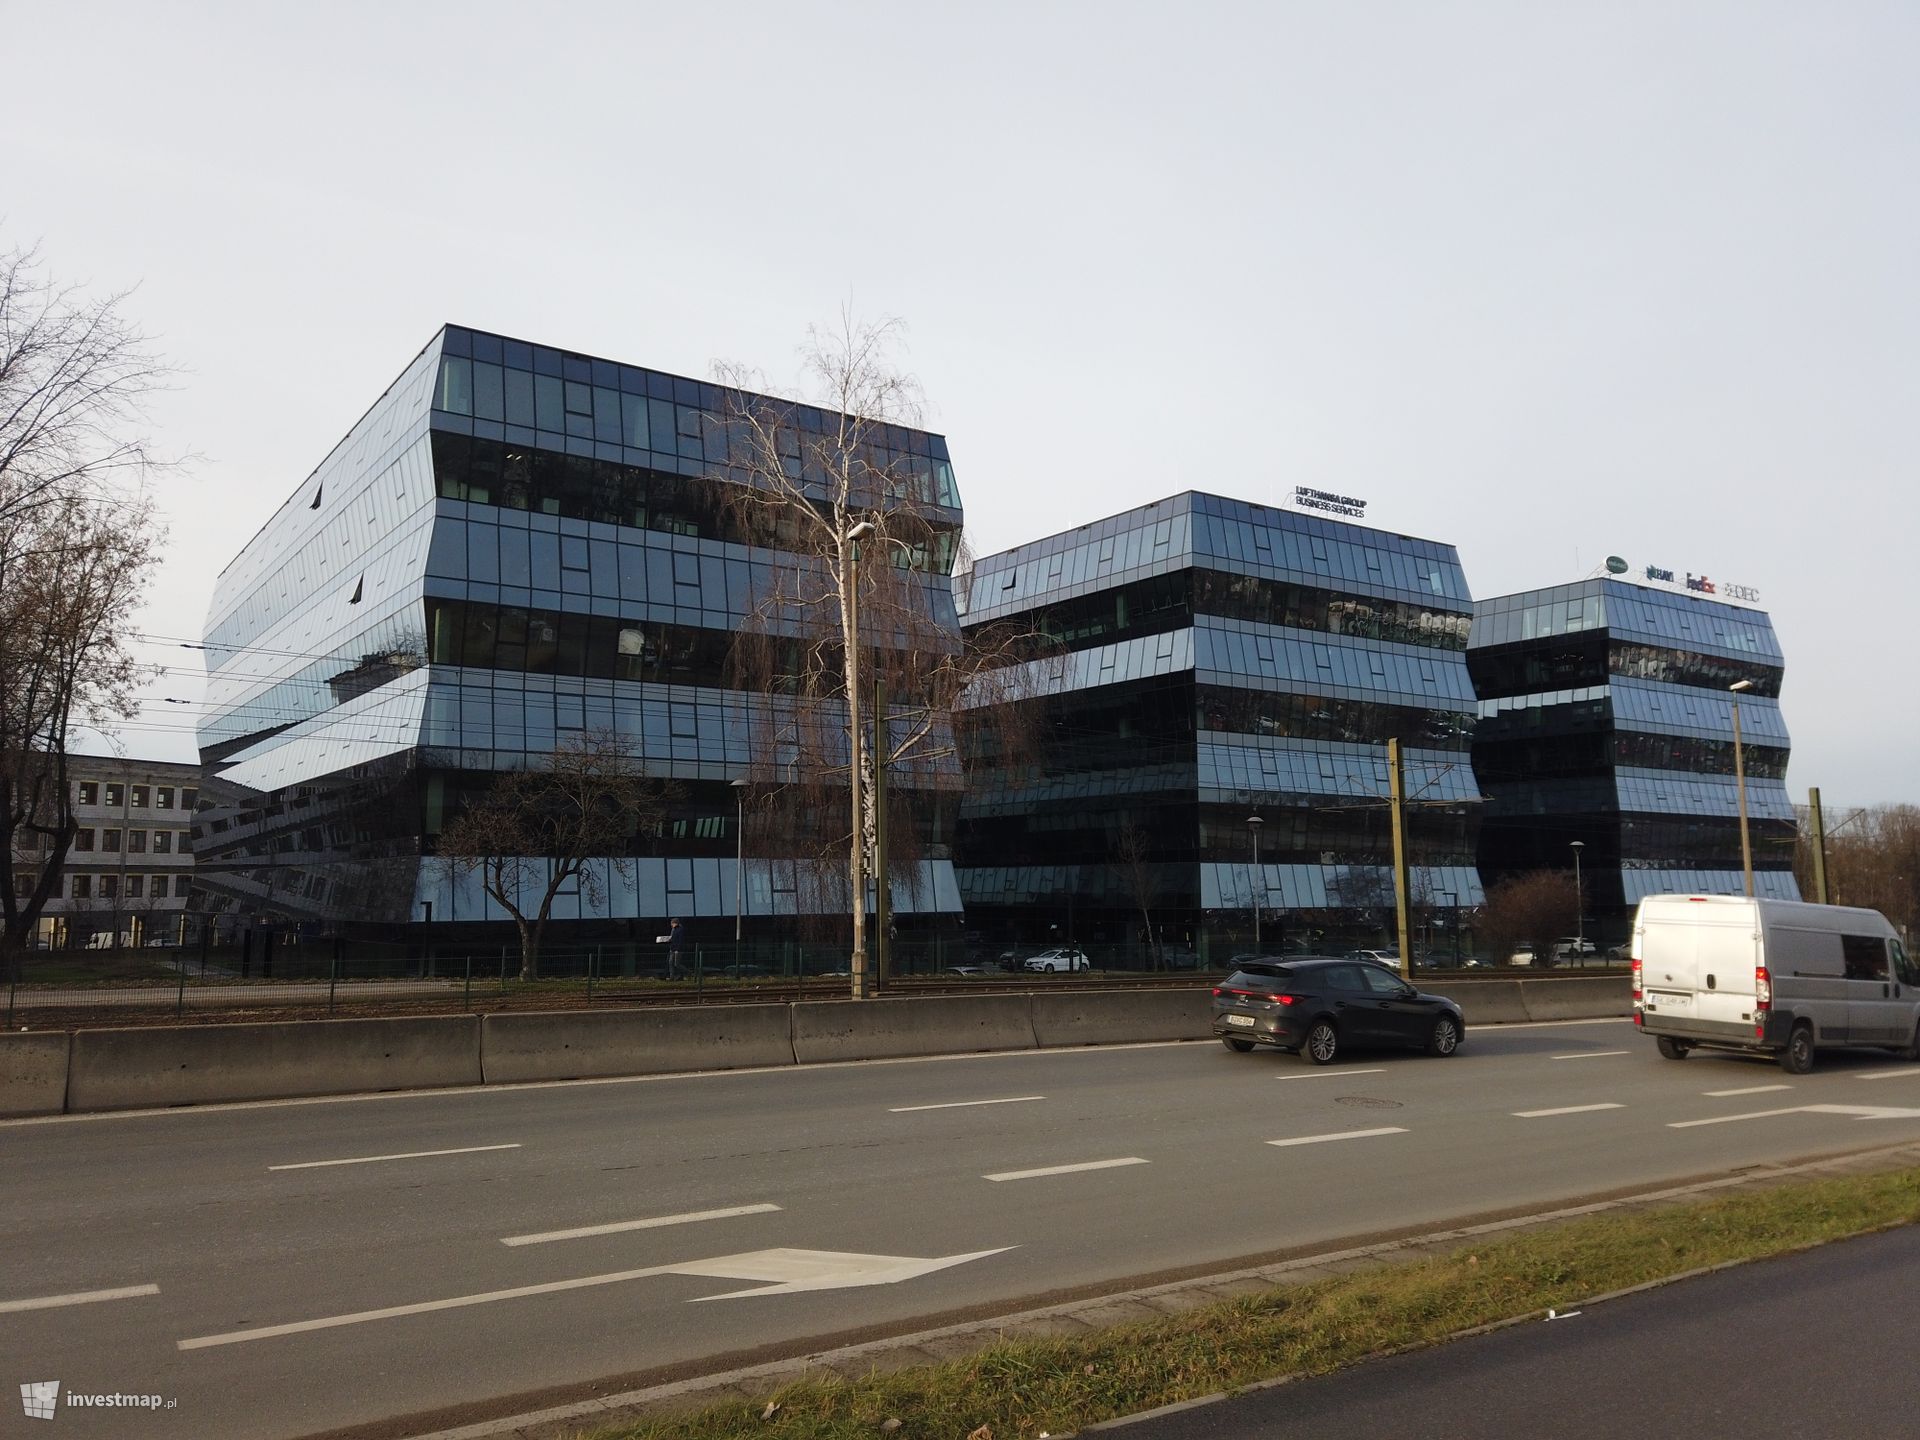 Panattoni rozwija się w Małopolsce i przenosi krakowskie biuro. Ponad pięciokrotnie większa powierzchnia i doskonały widok na Wawel